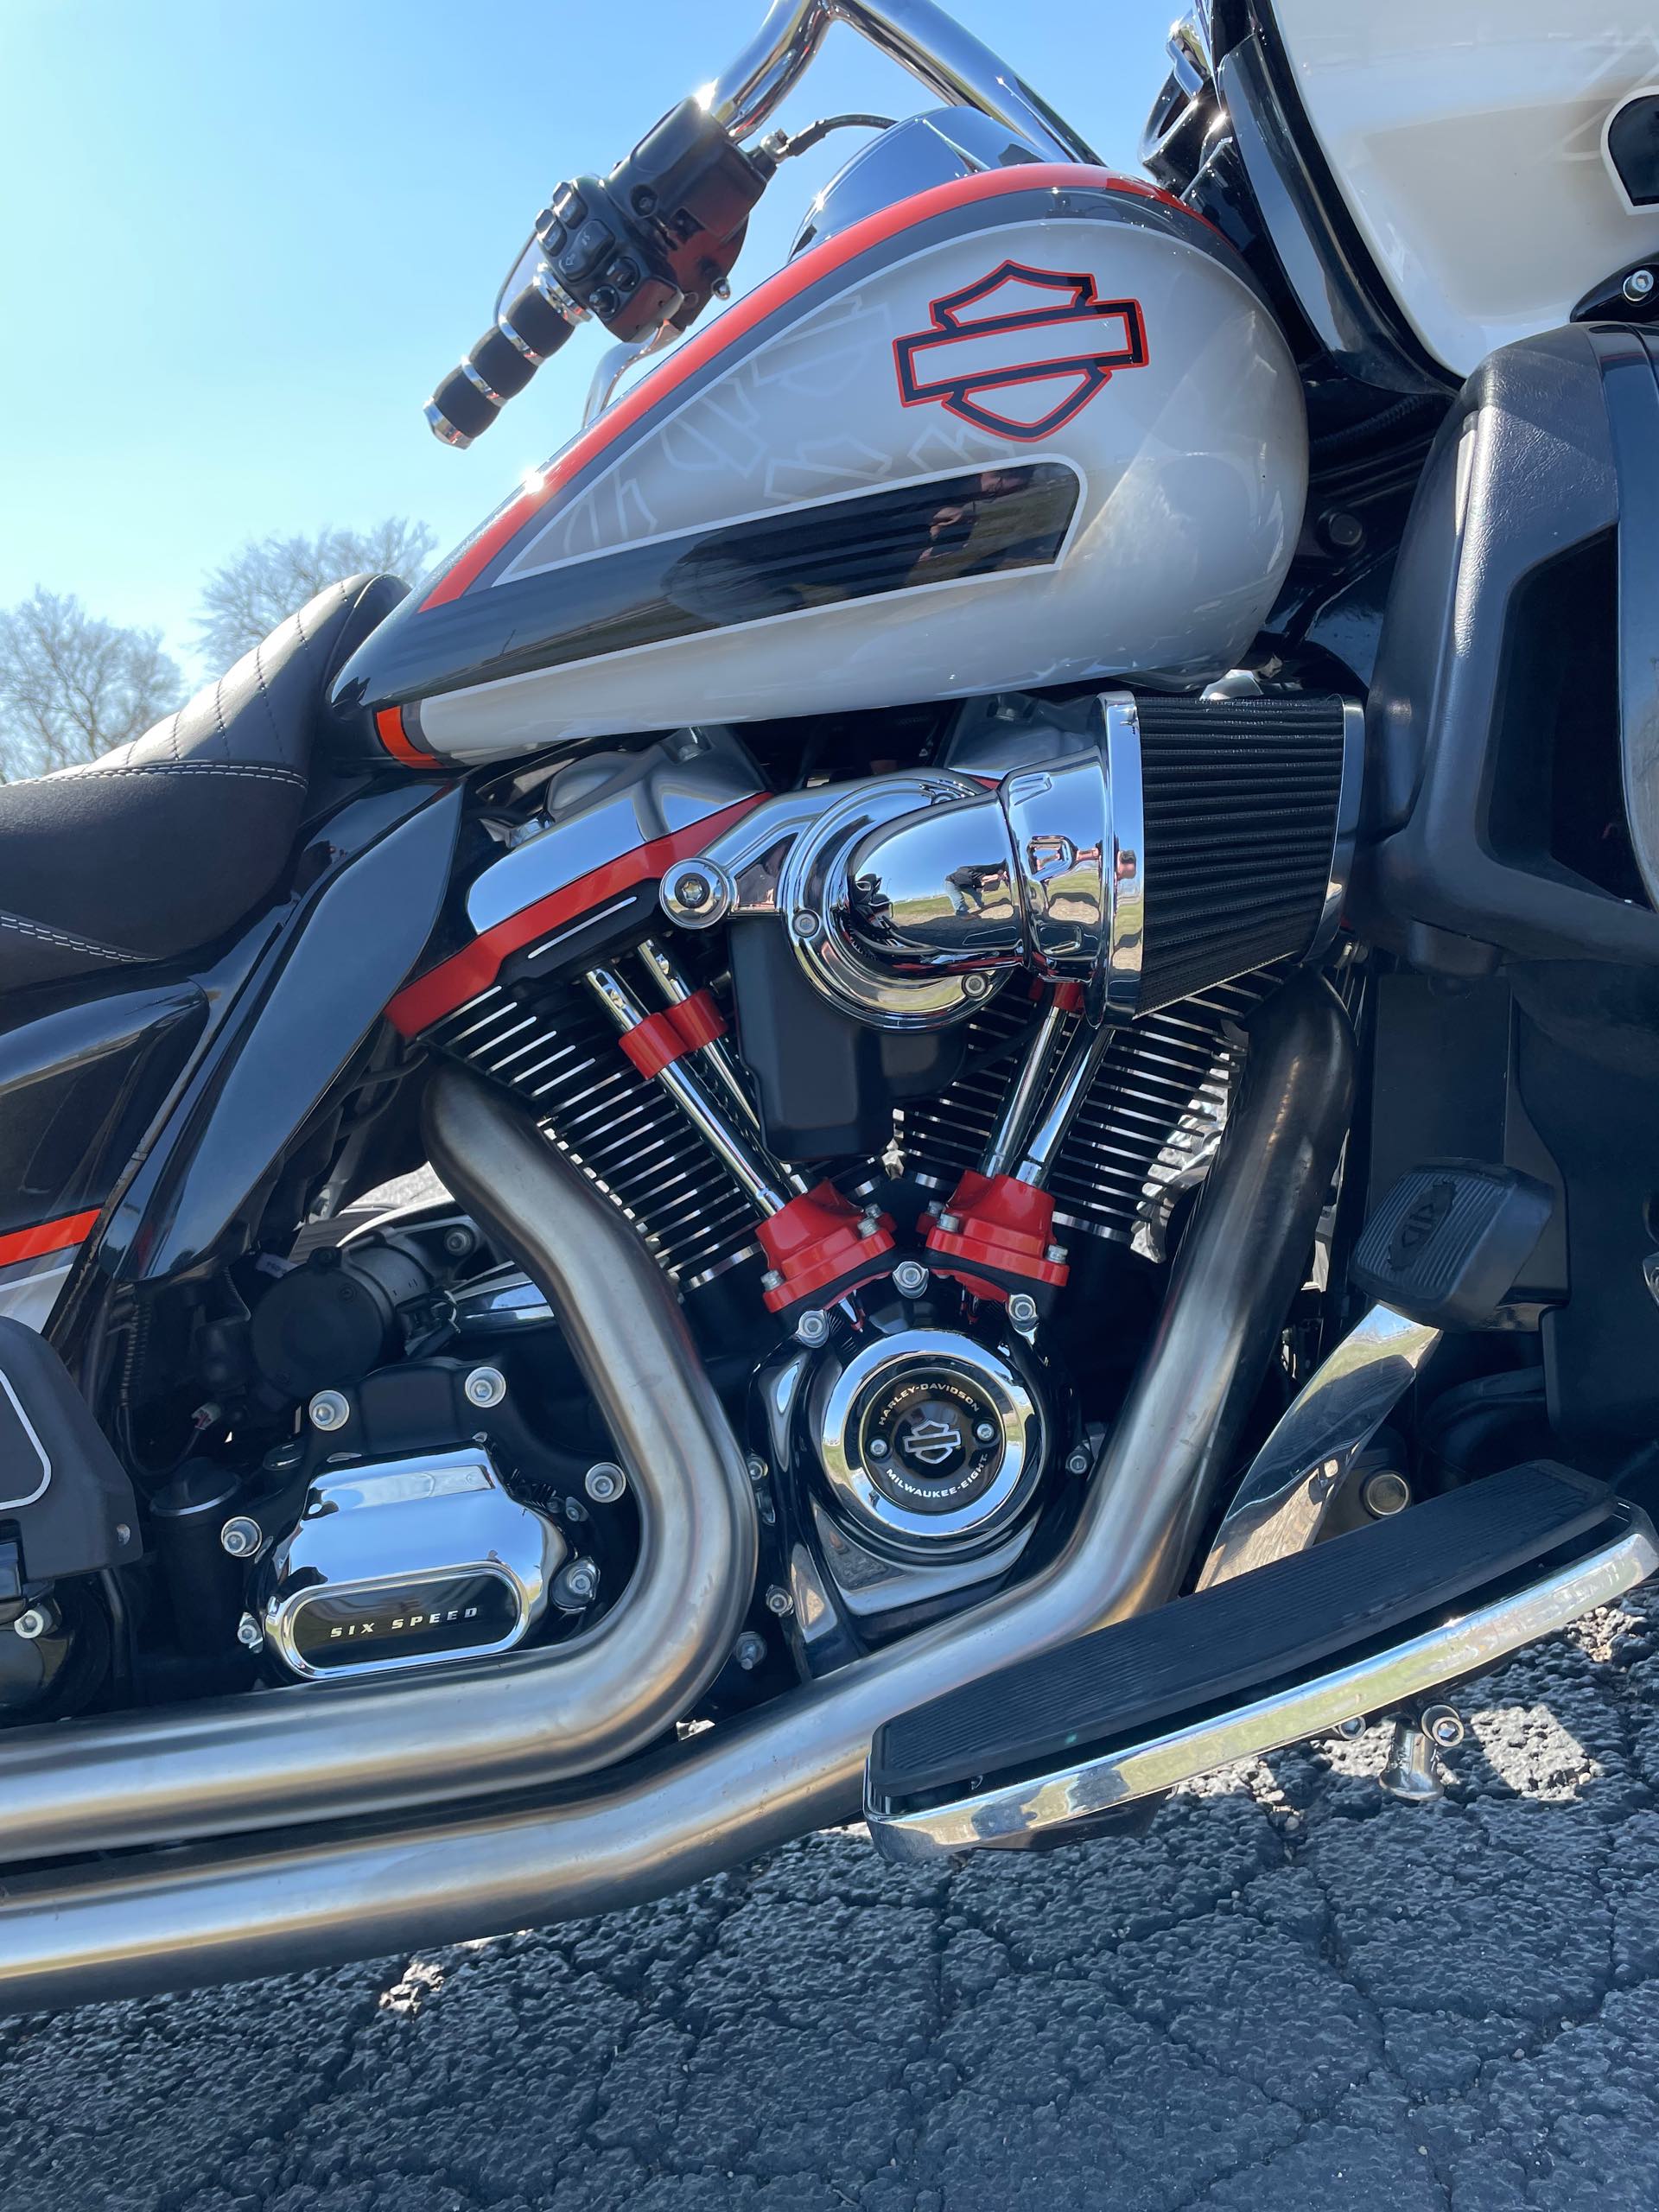 2019 Harley-Davidson Road Glide Ultra at Randy's Cycle